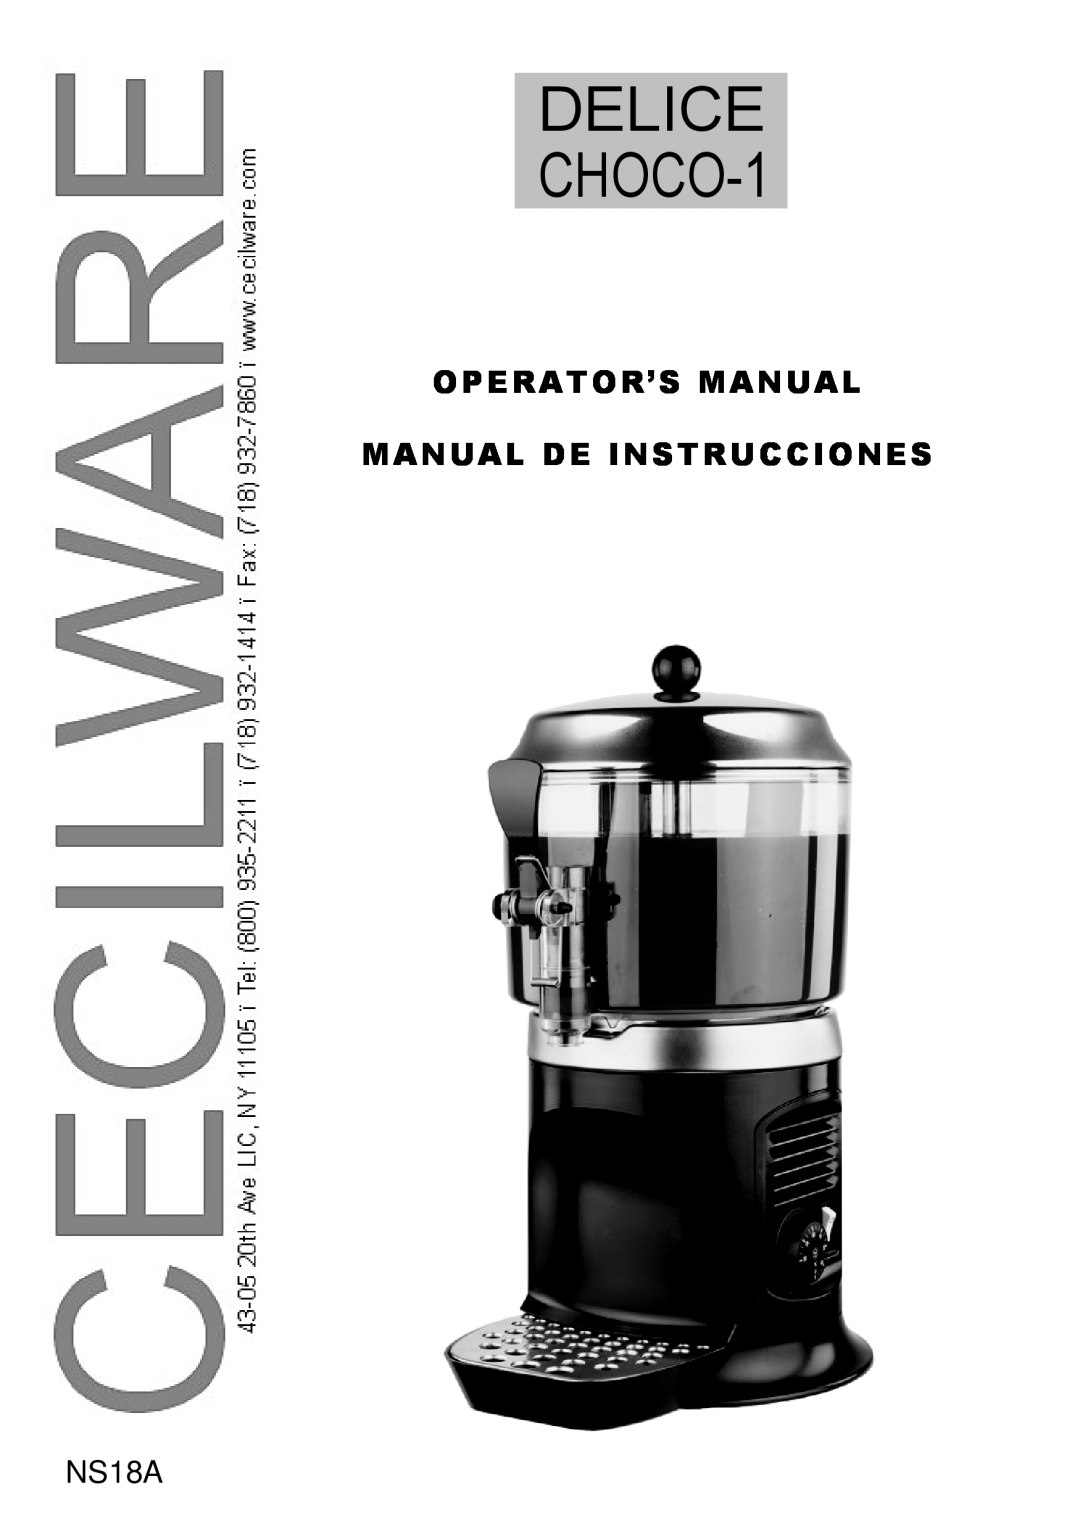 Cecilware NS18A manual Delice, CHOCO-1, Operator’S Manual Manual De Instrucciones 